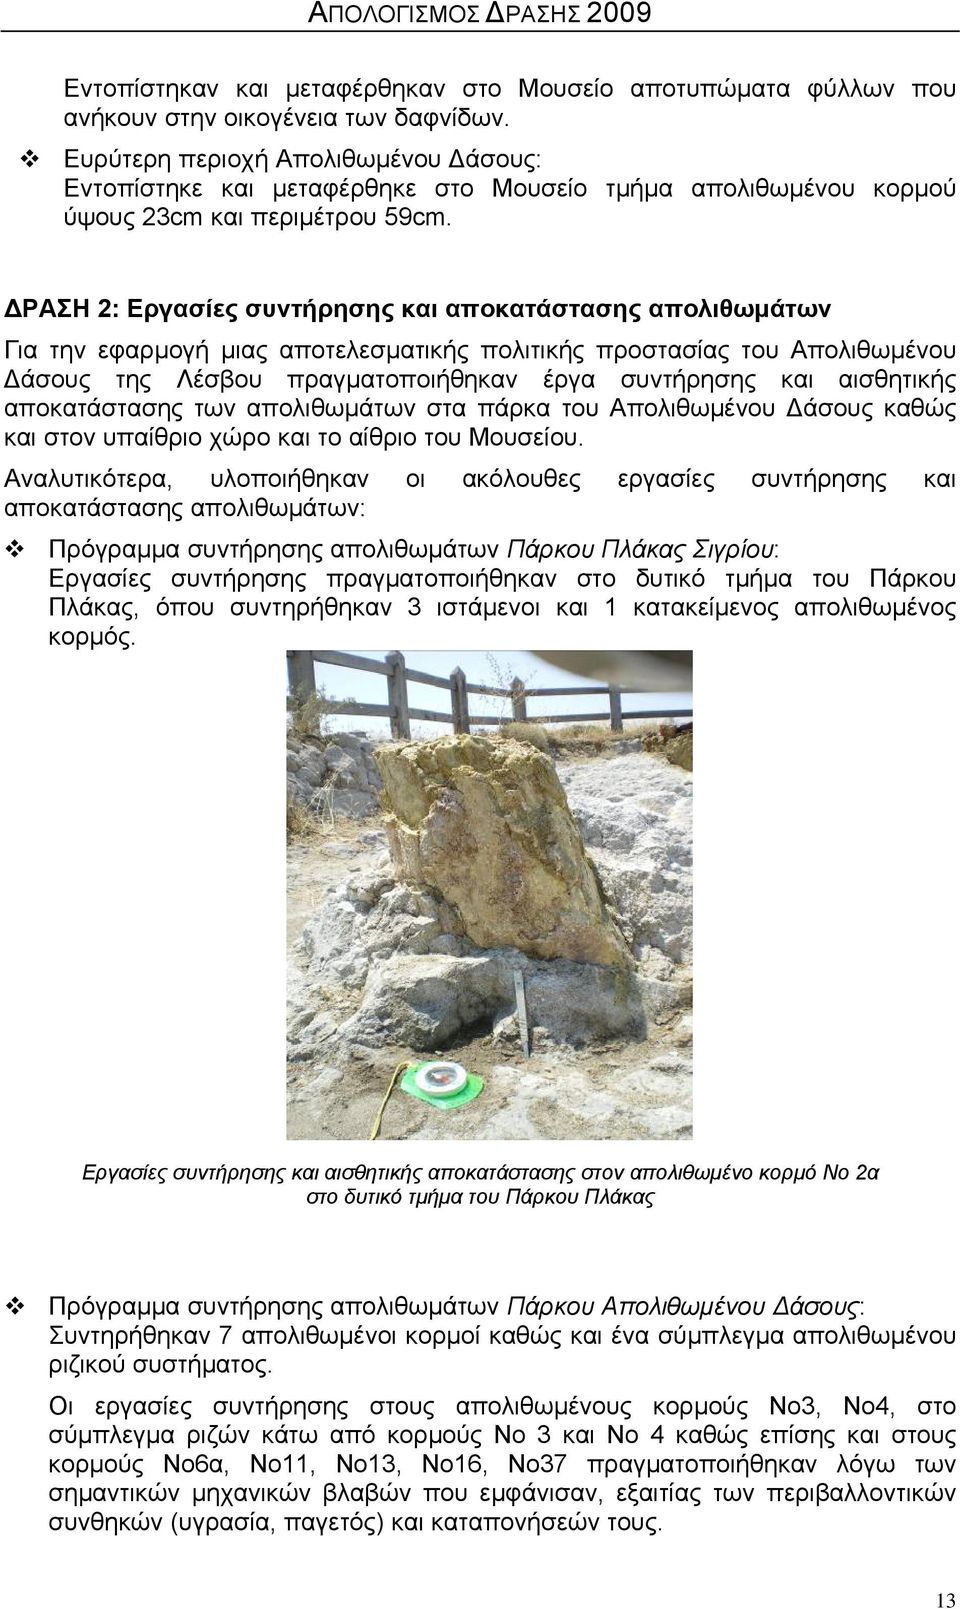 ΔΡΑΣΗ 2: Εργασίες συντήρησης και αποκατάστασης απολιθωμάτων Για την εφαρμογή μιας αποτελεσματικής πολιτικής προστασίας του Απολιθωμένου Δάσους της Λέσβου πραγματοποιήθηκαν έργα συντήρησης και